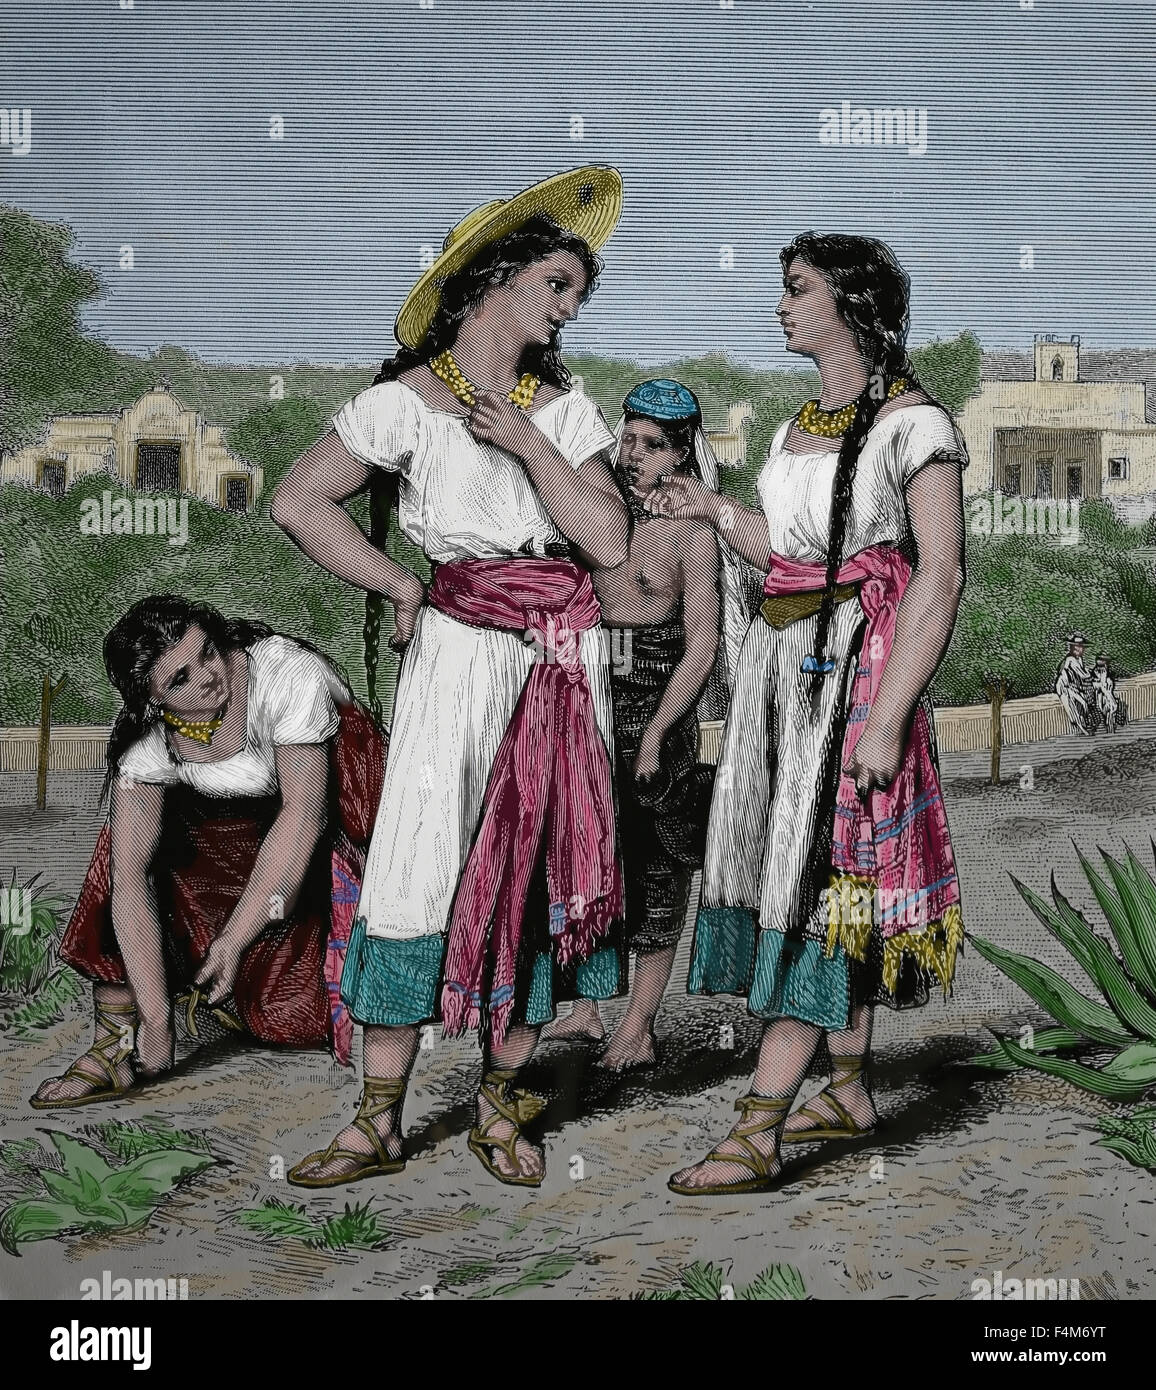 L'Amérique. Le Mexique. Chiapas. Les jeunes filles de Tuxtla, ch. 1875. Gravure, 19ème siècle. Banque D'Images